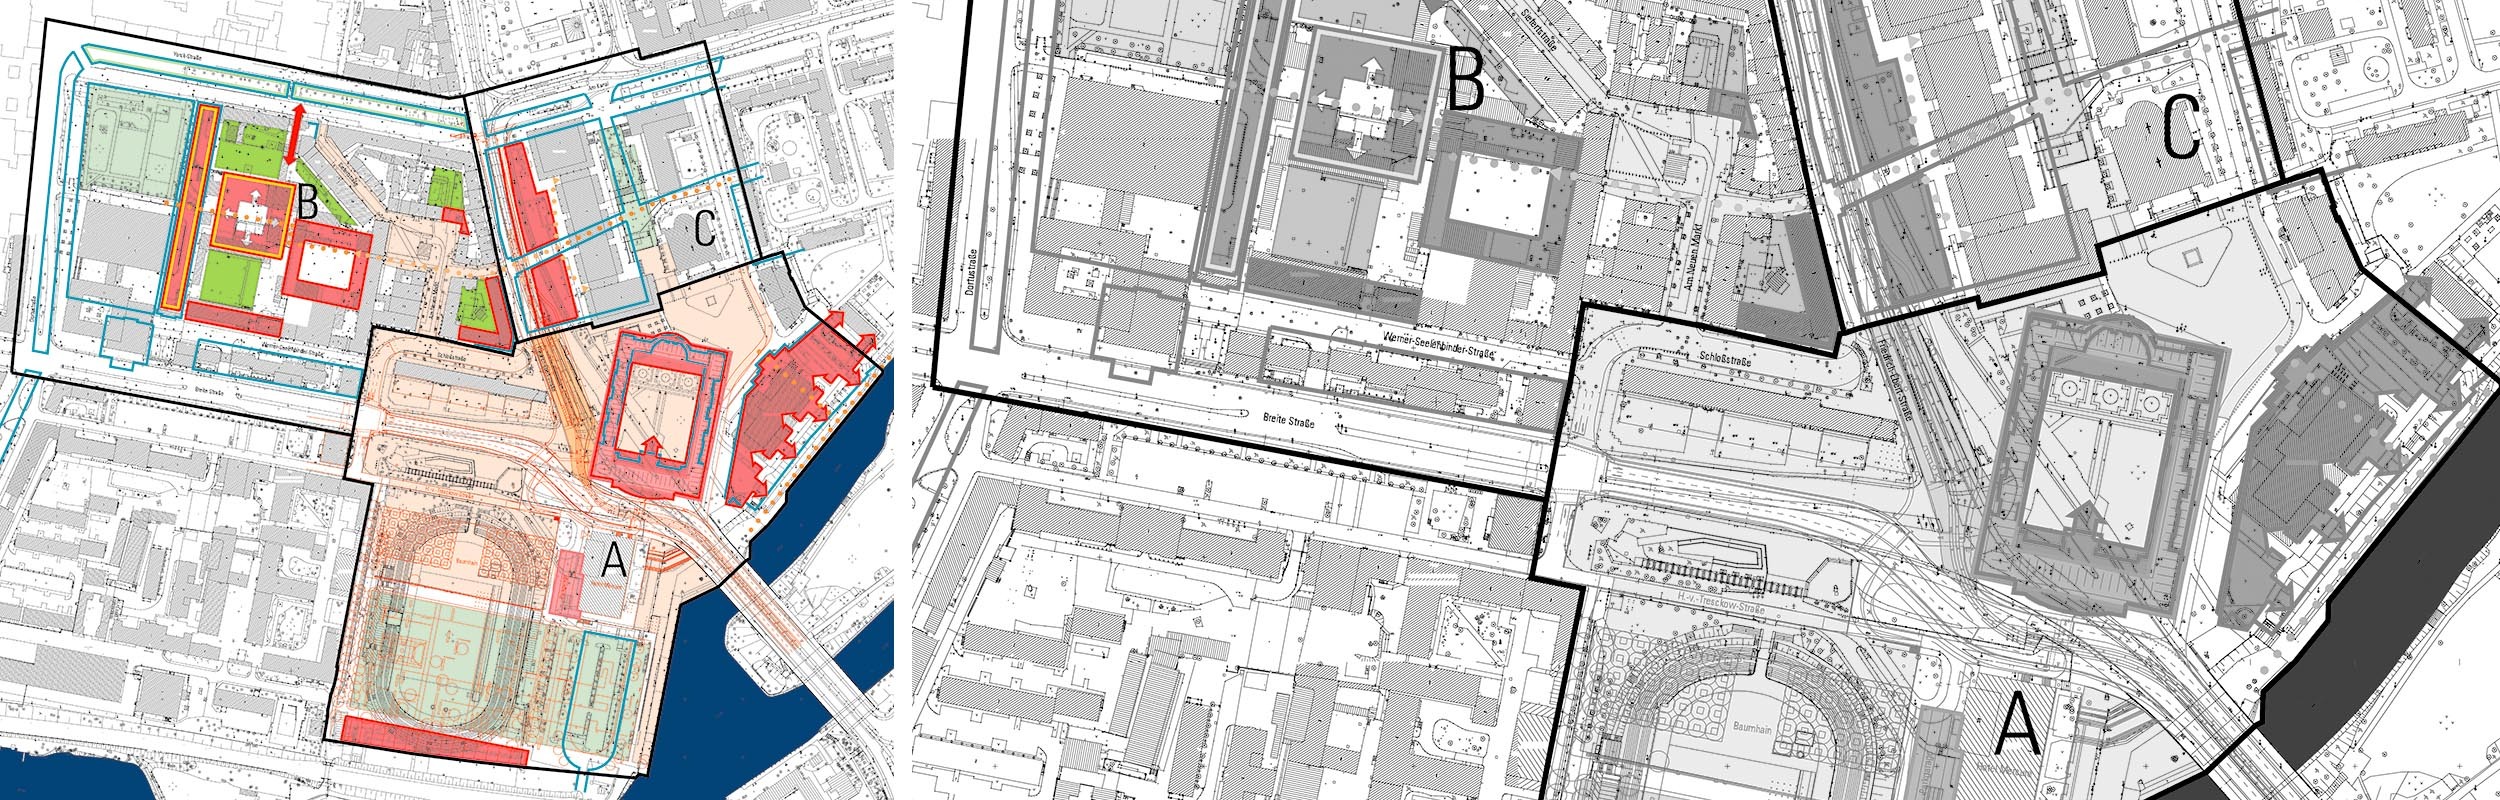 Grafik: Städtebaulicher Lageplan aus dem Jahr 1998 mit Darstellung der vorbereitenden Untersuchungen im Sanierungsgebiet der Innenstadt Potsdam.